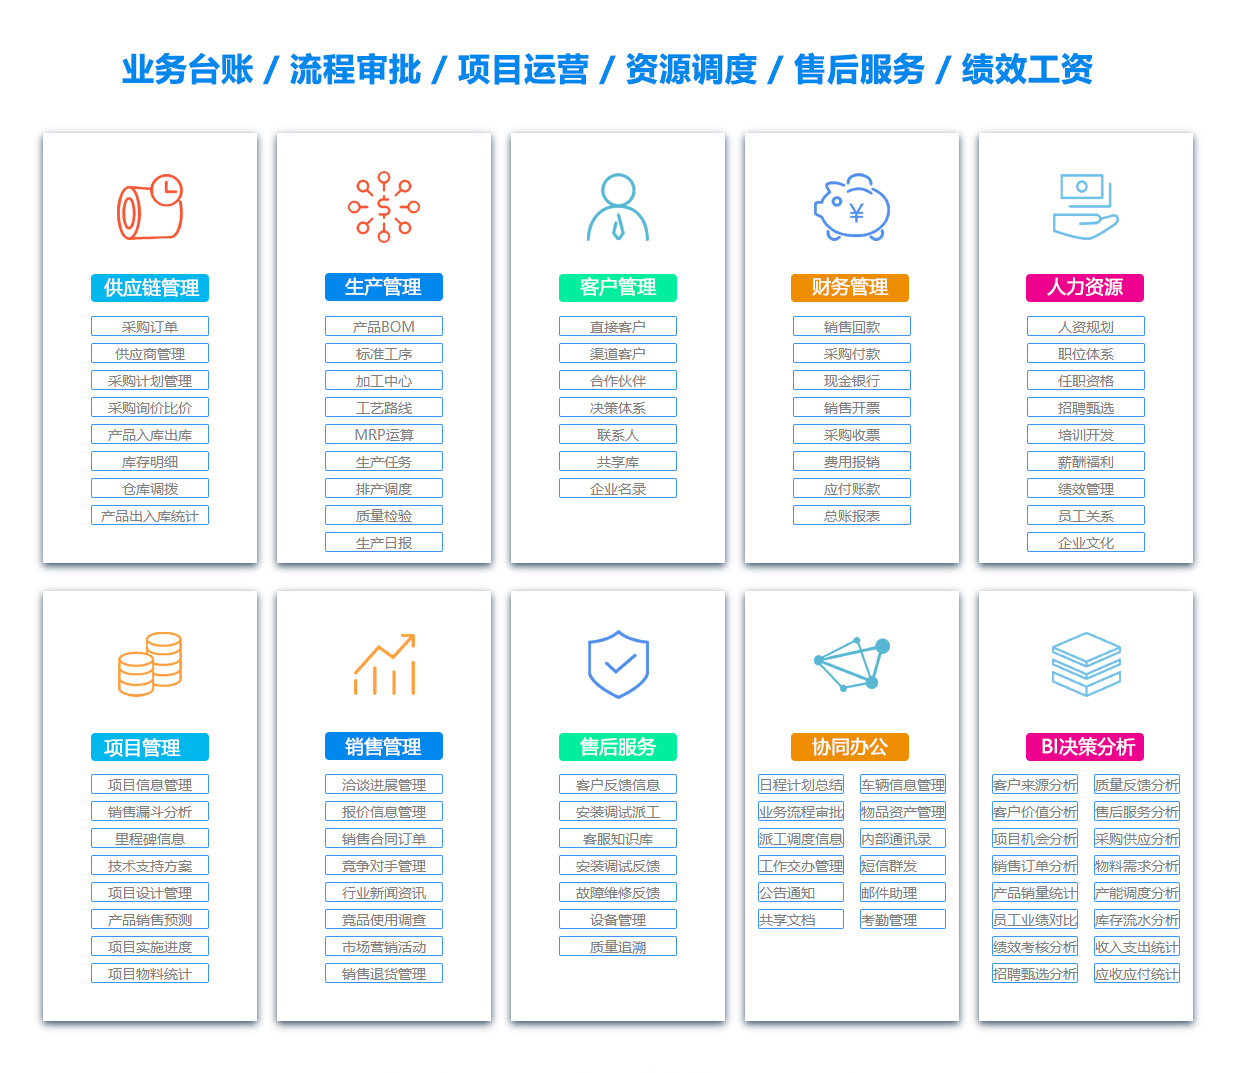 北京BOM:物料清单软件